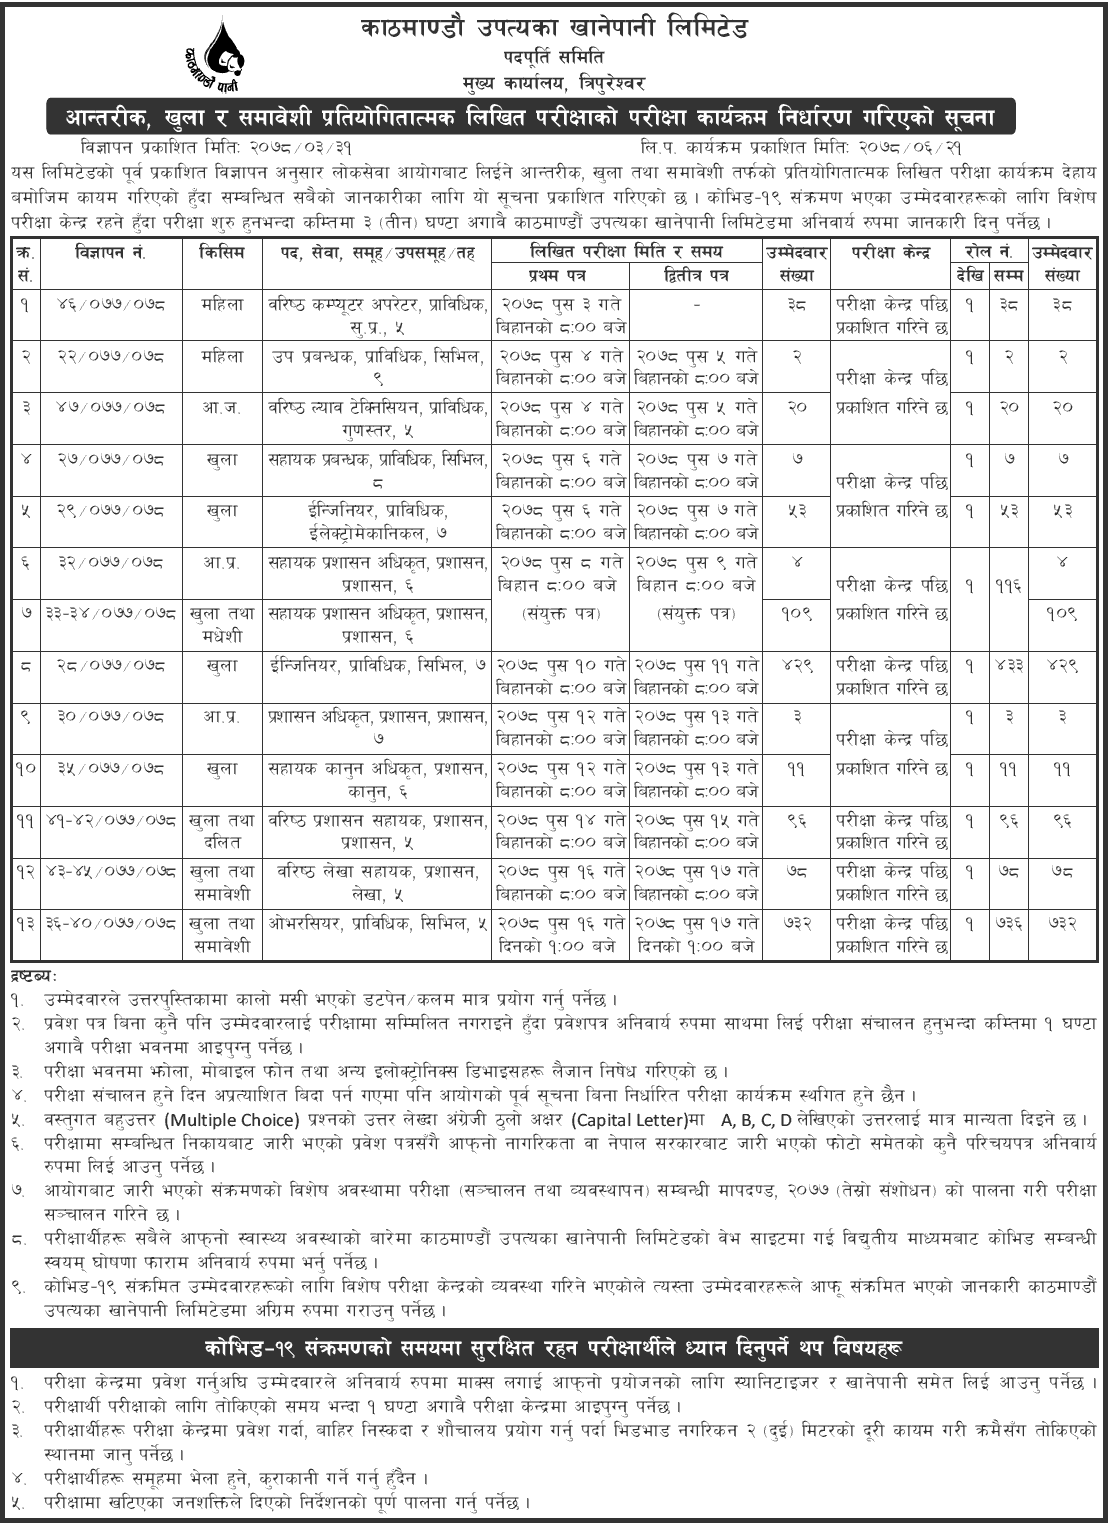 Kathmandu Upatyaka Khanepani Limited (KUKL) Written Exam Schedule 2078